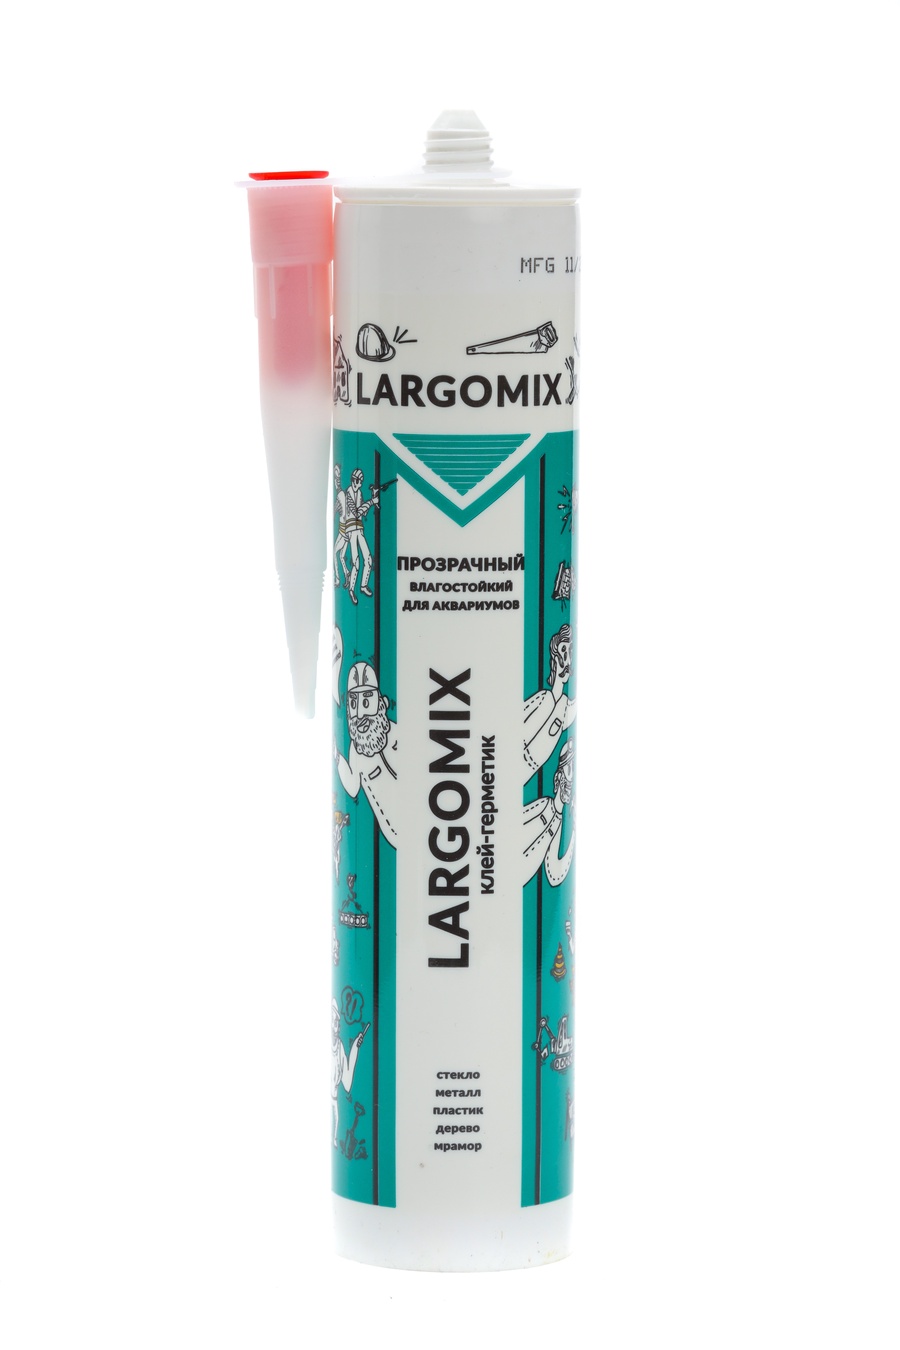 Клей-герметик LARGOMIX для аквариумов (влагостойкий) прозрачный, 280 мл. арт. LRX020